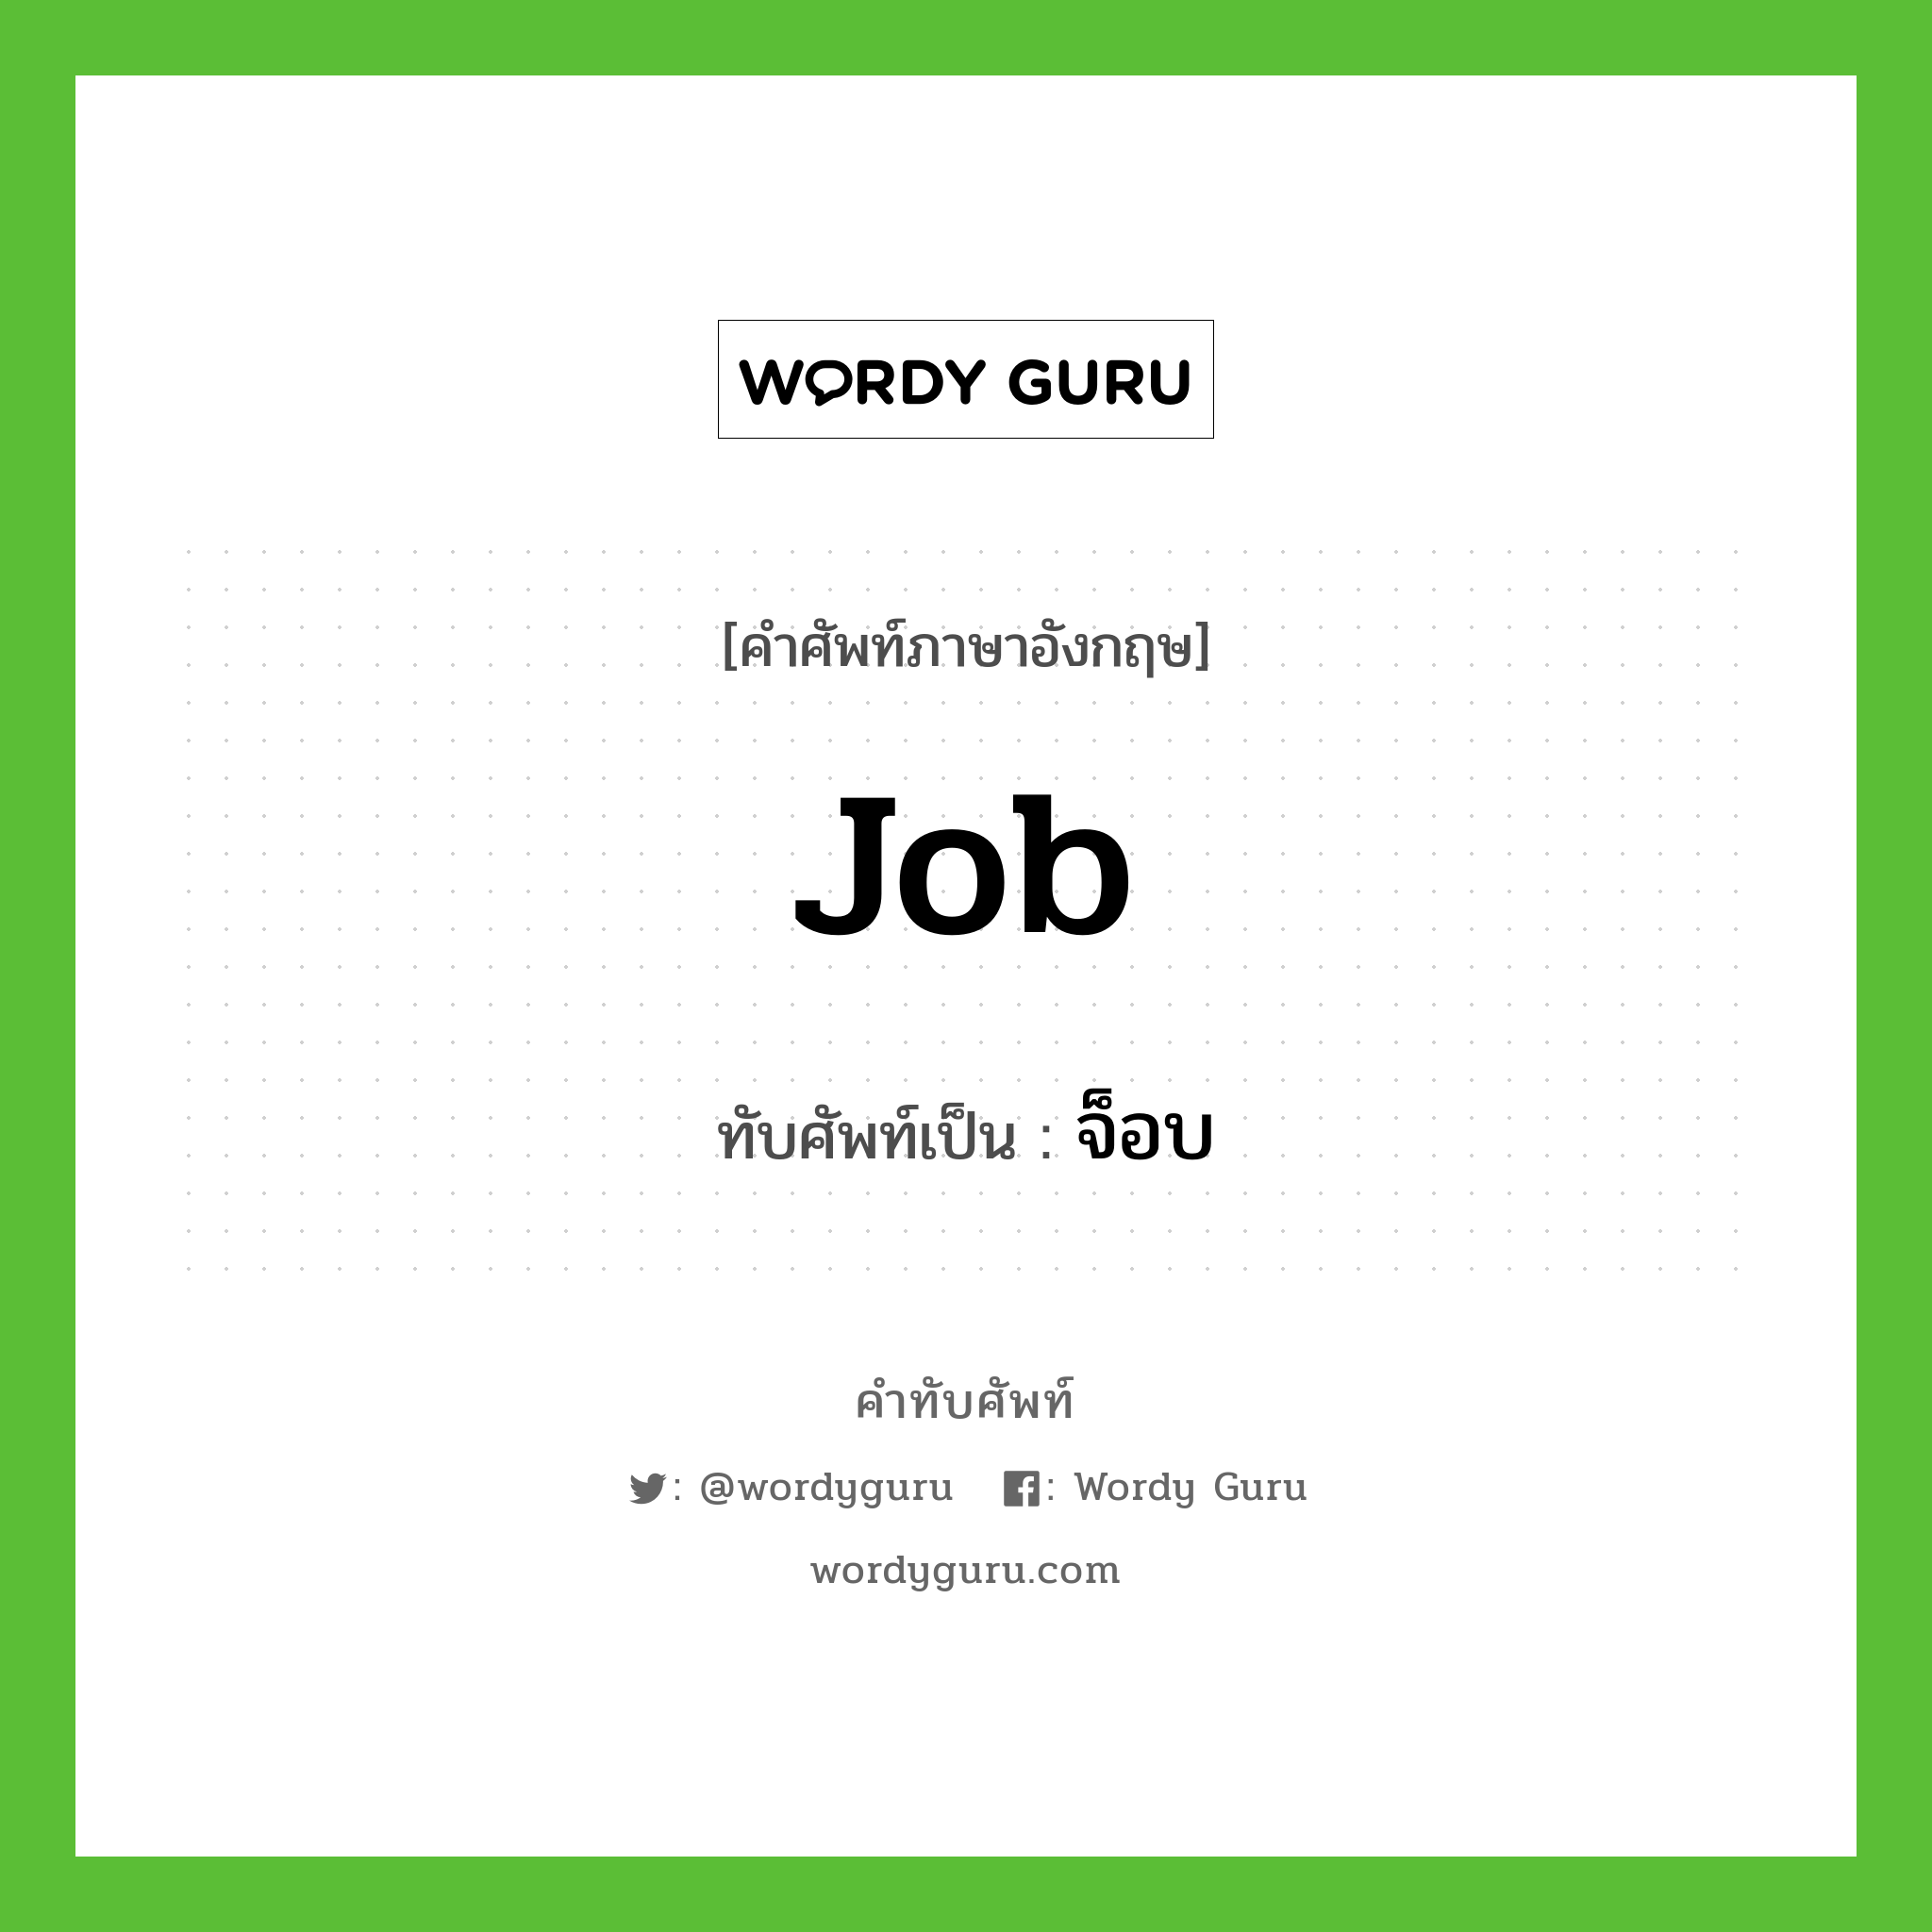 job เขียนเป็นคำไทยว่าอะไร?, คำศัพท์ภาษาอังกฤษ job ทับศัพท์เป็น จ็อบ